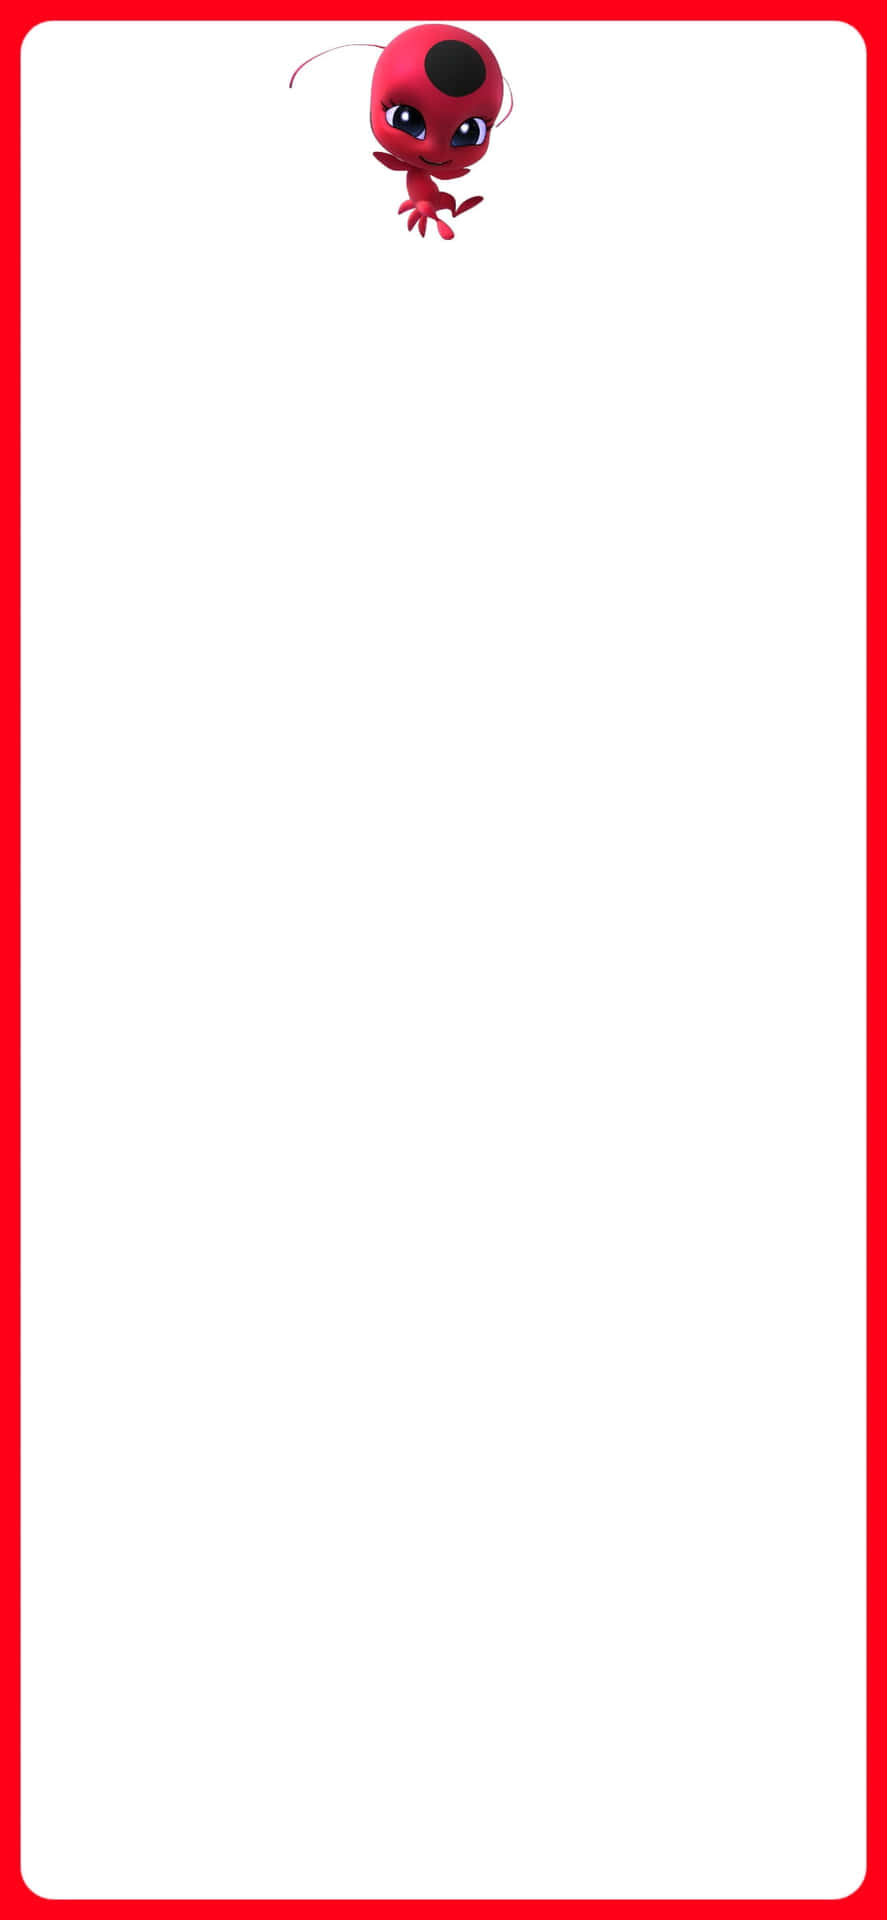 Einroter Und Weißer Rahmen Mit Einem Roten Und Weißen Monster. Wallpaper